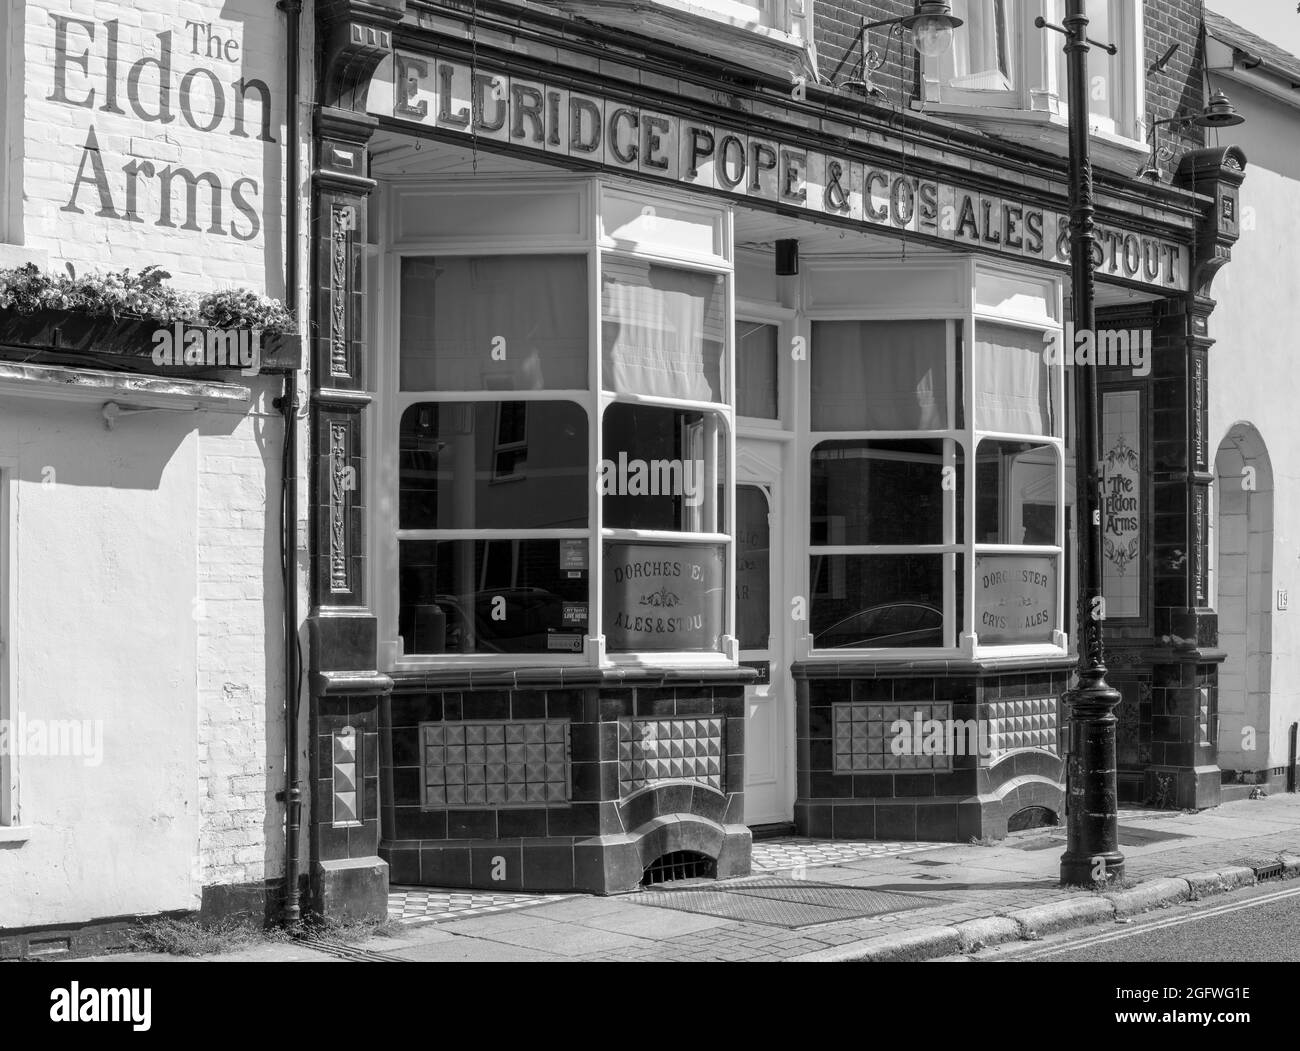 The Eldon Arms - maison publique - Eldon Street, Southsea, Portsmouth, Hampshire, Angleterre, ROYAUME-UNI. Banque D'Images